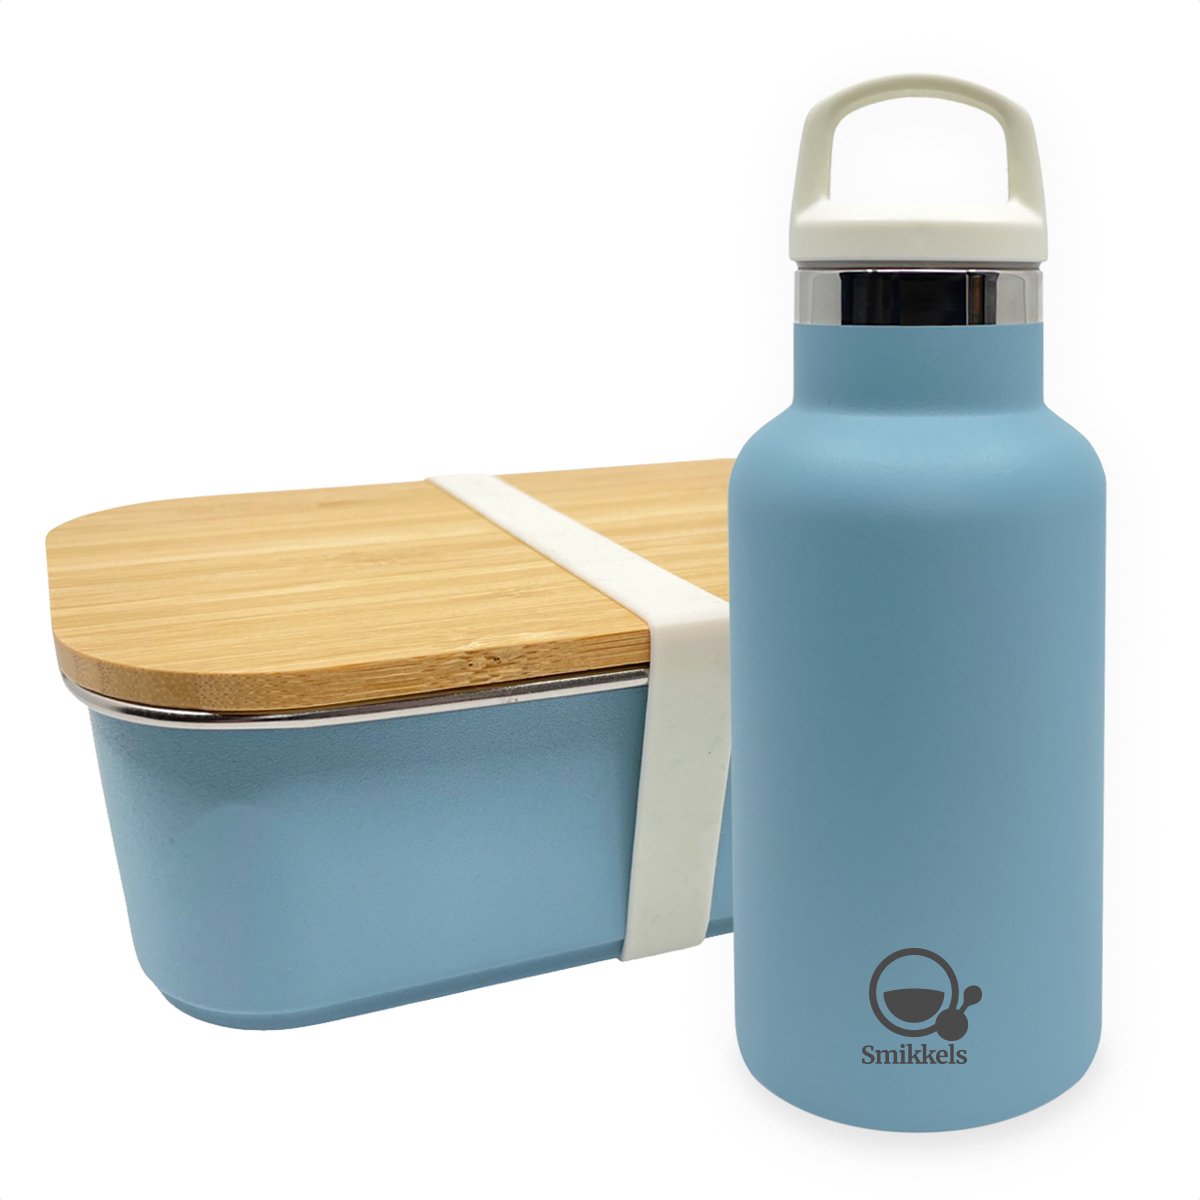 Smikkels - Set RVS lunchbox met thermos drinkfles - Blauw - Duurzaam - Fles 350ml met afsluitdop en rietjesdop - broodtrommel 900ml met bamboe deksel en elastiek - thermosfles - kind